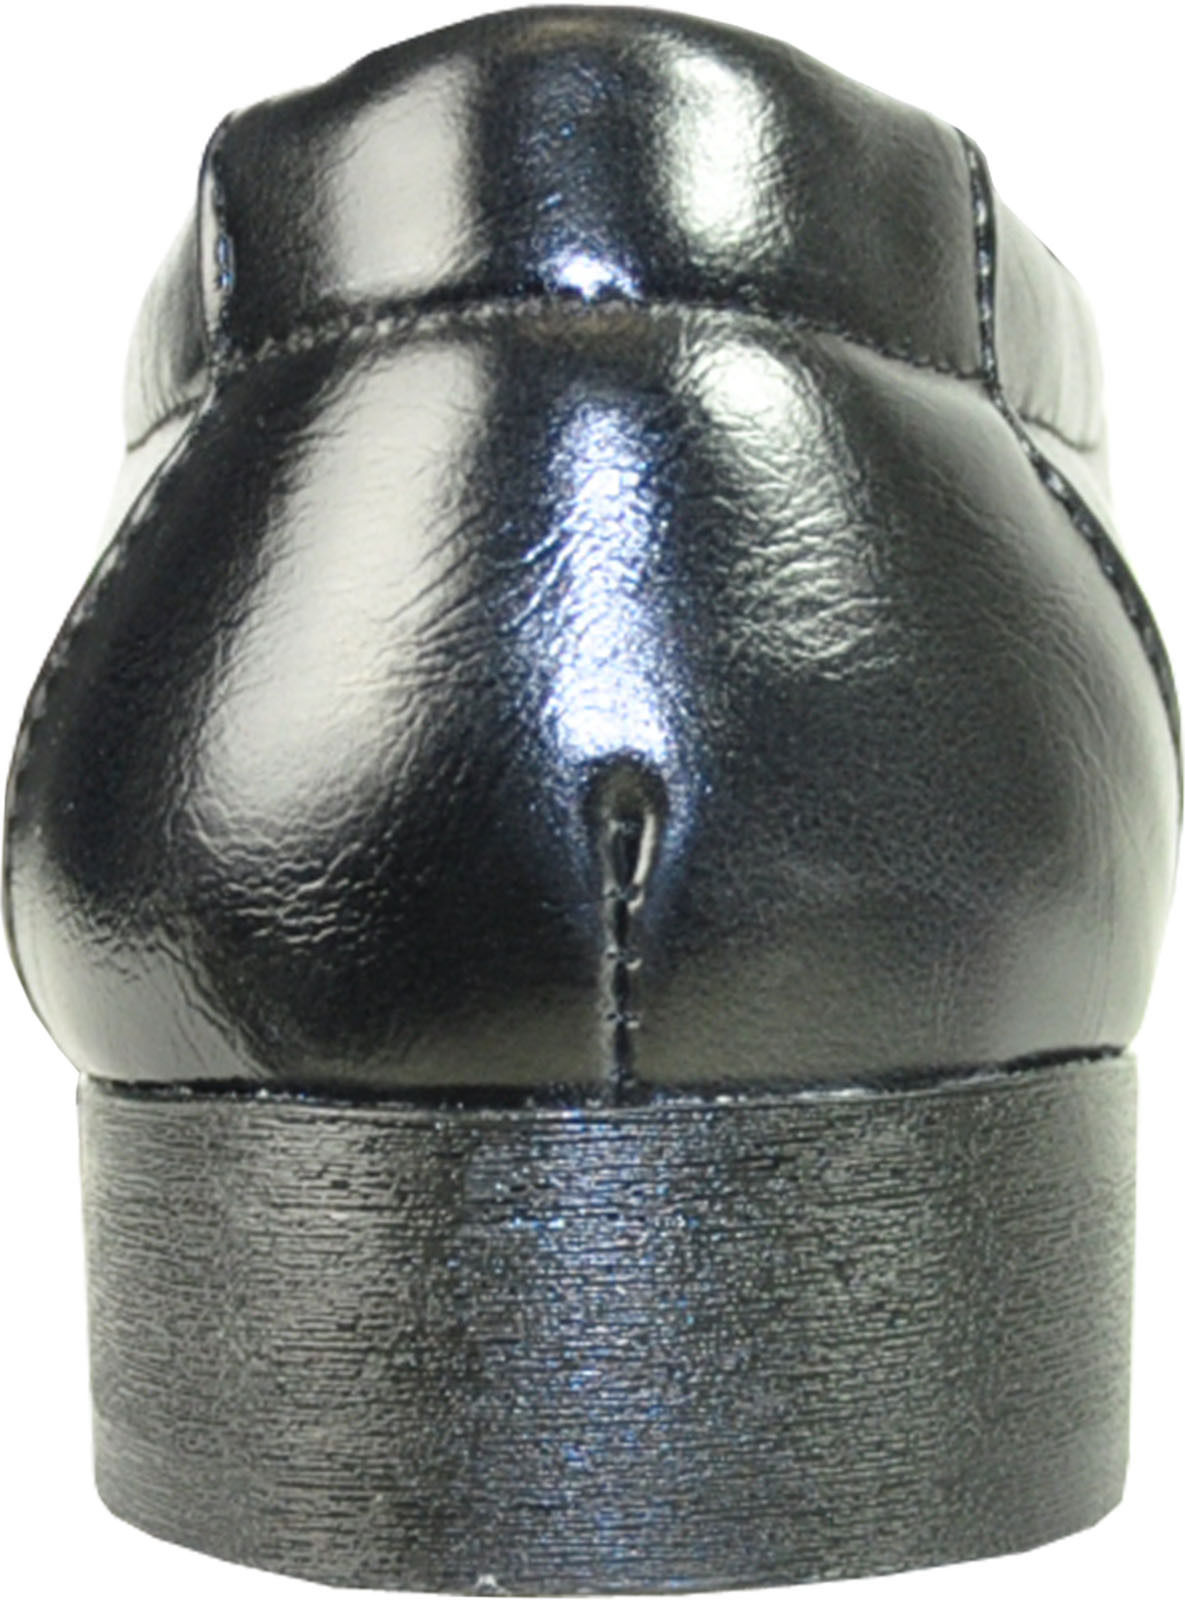 Coronado Marino-2 Dress Shoe Fashion Point Bicycle Toe with Leather Lining Black(8.5 D(M)US - image 3 of 7